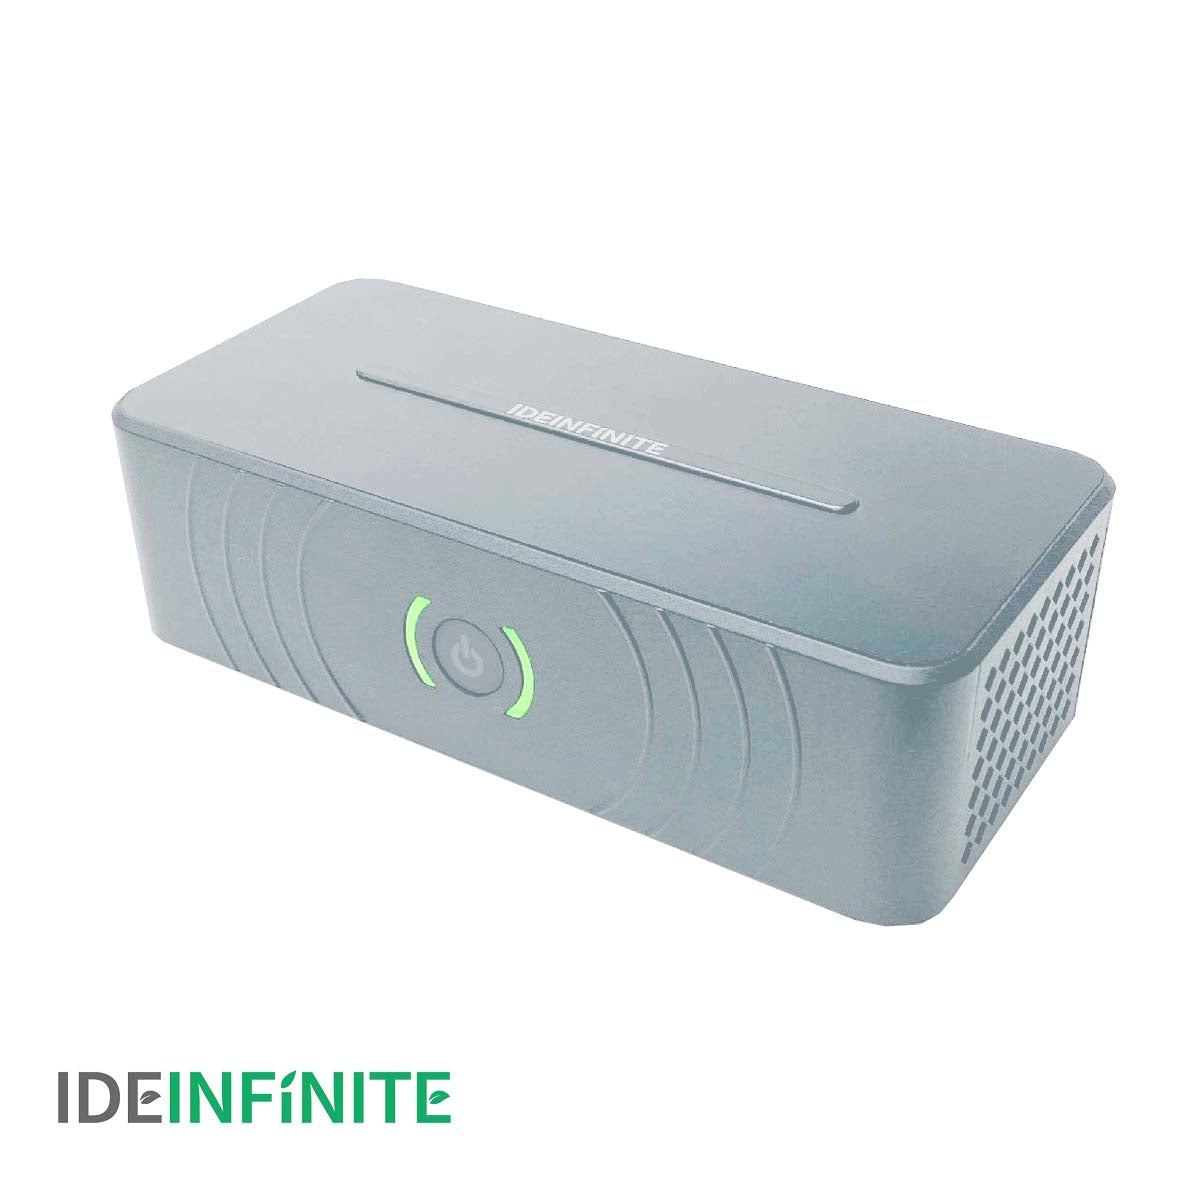 [寄海外] IDEinfinite - UVC 等離子 空氣淨化機  (金/灰/白)